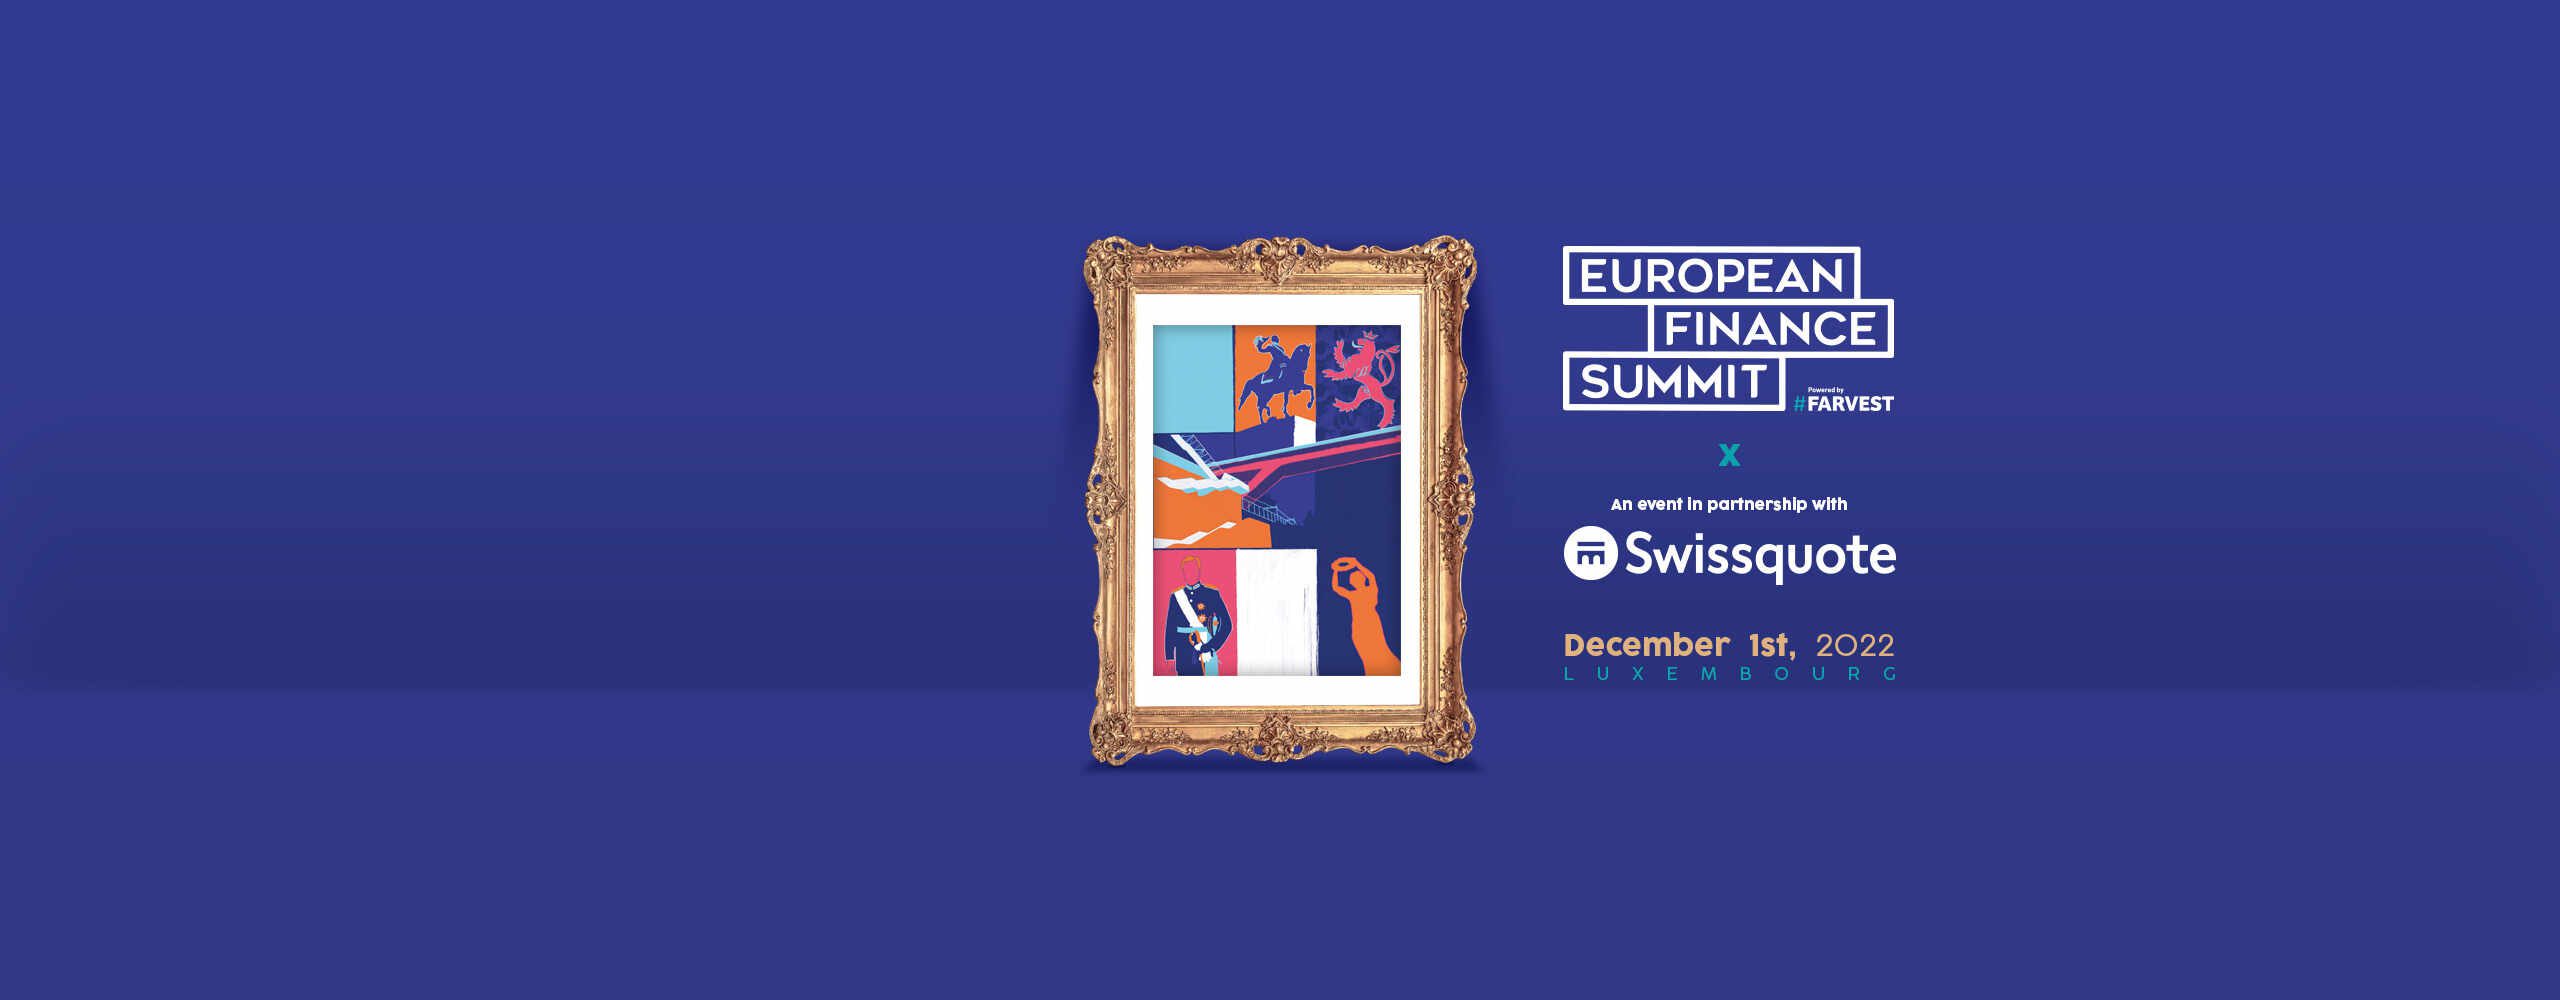 The European Finance Summit